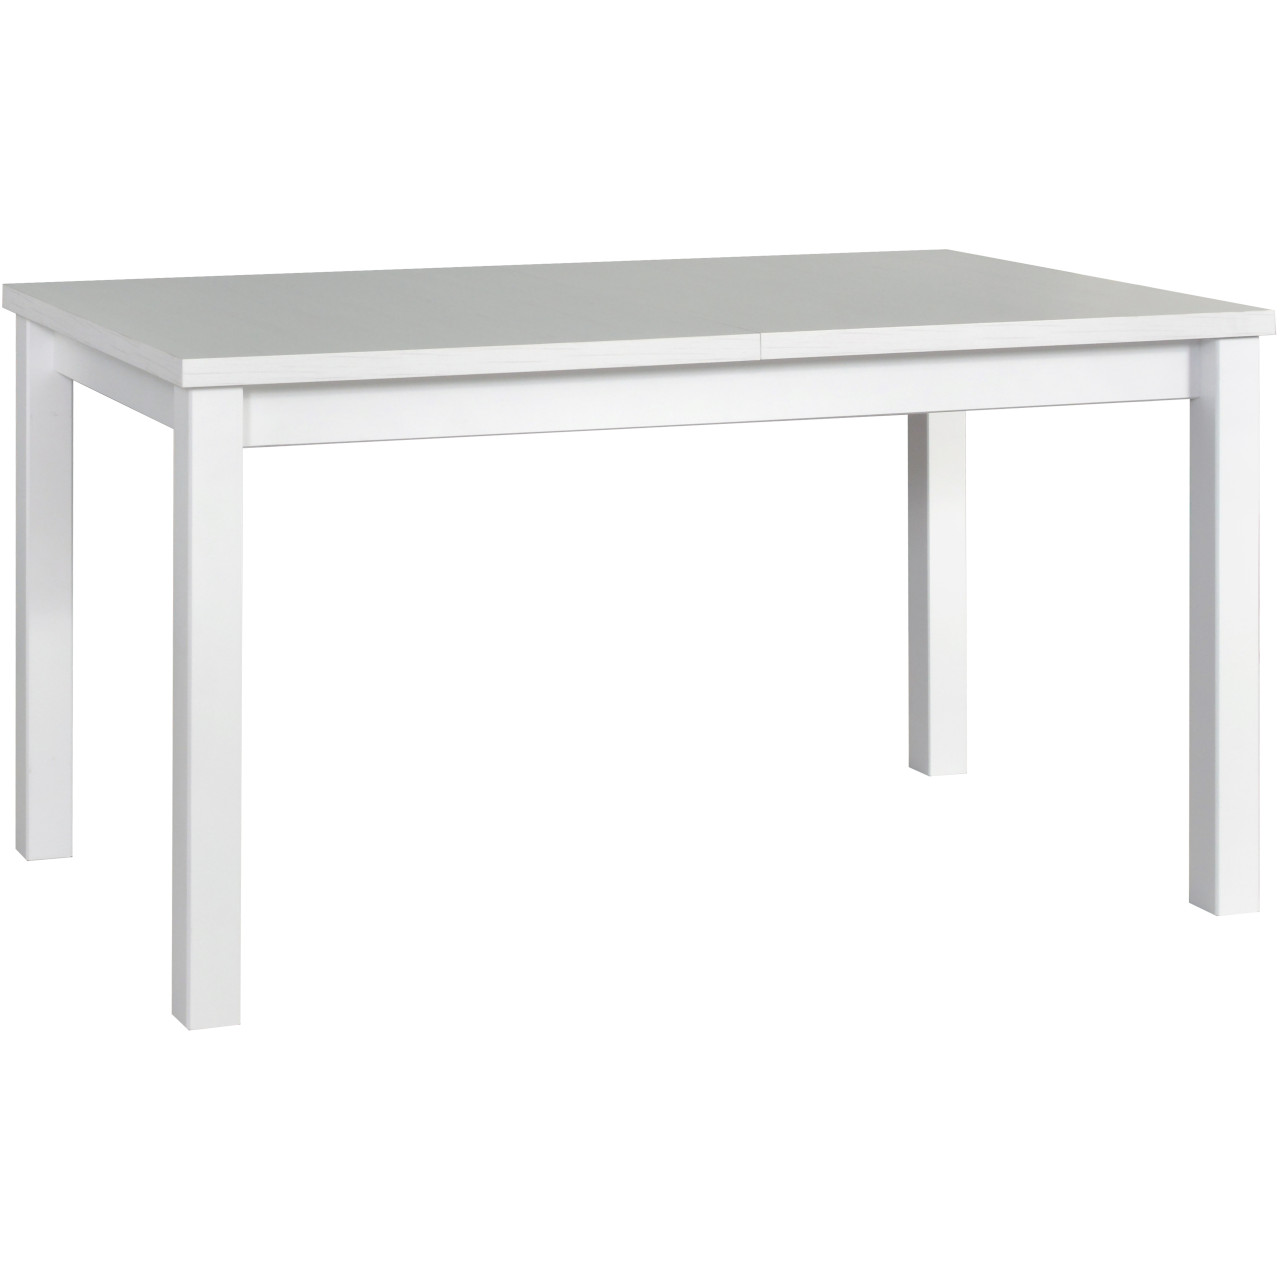 Tisch MODENA 1 80x140/180 weiß laminat